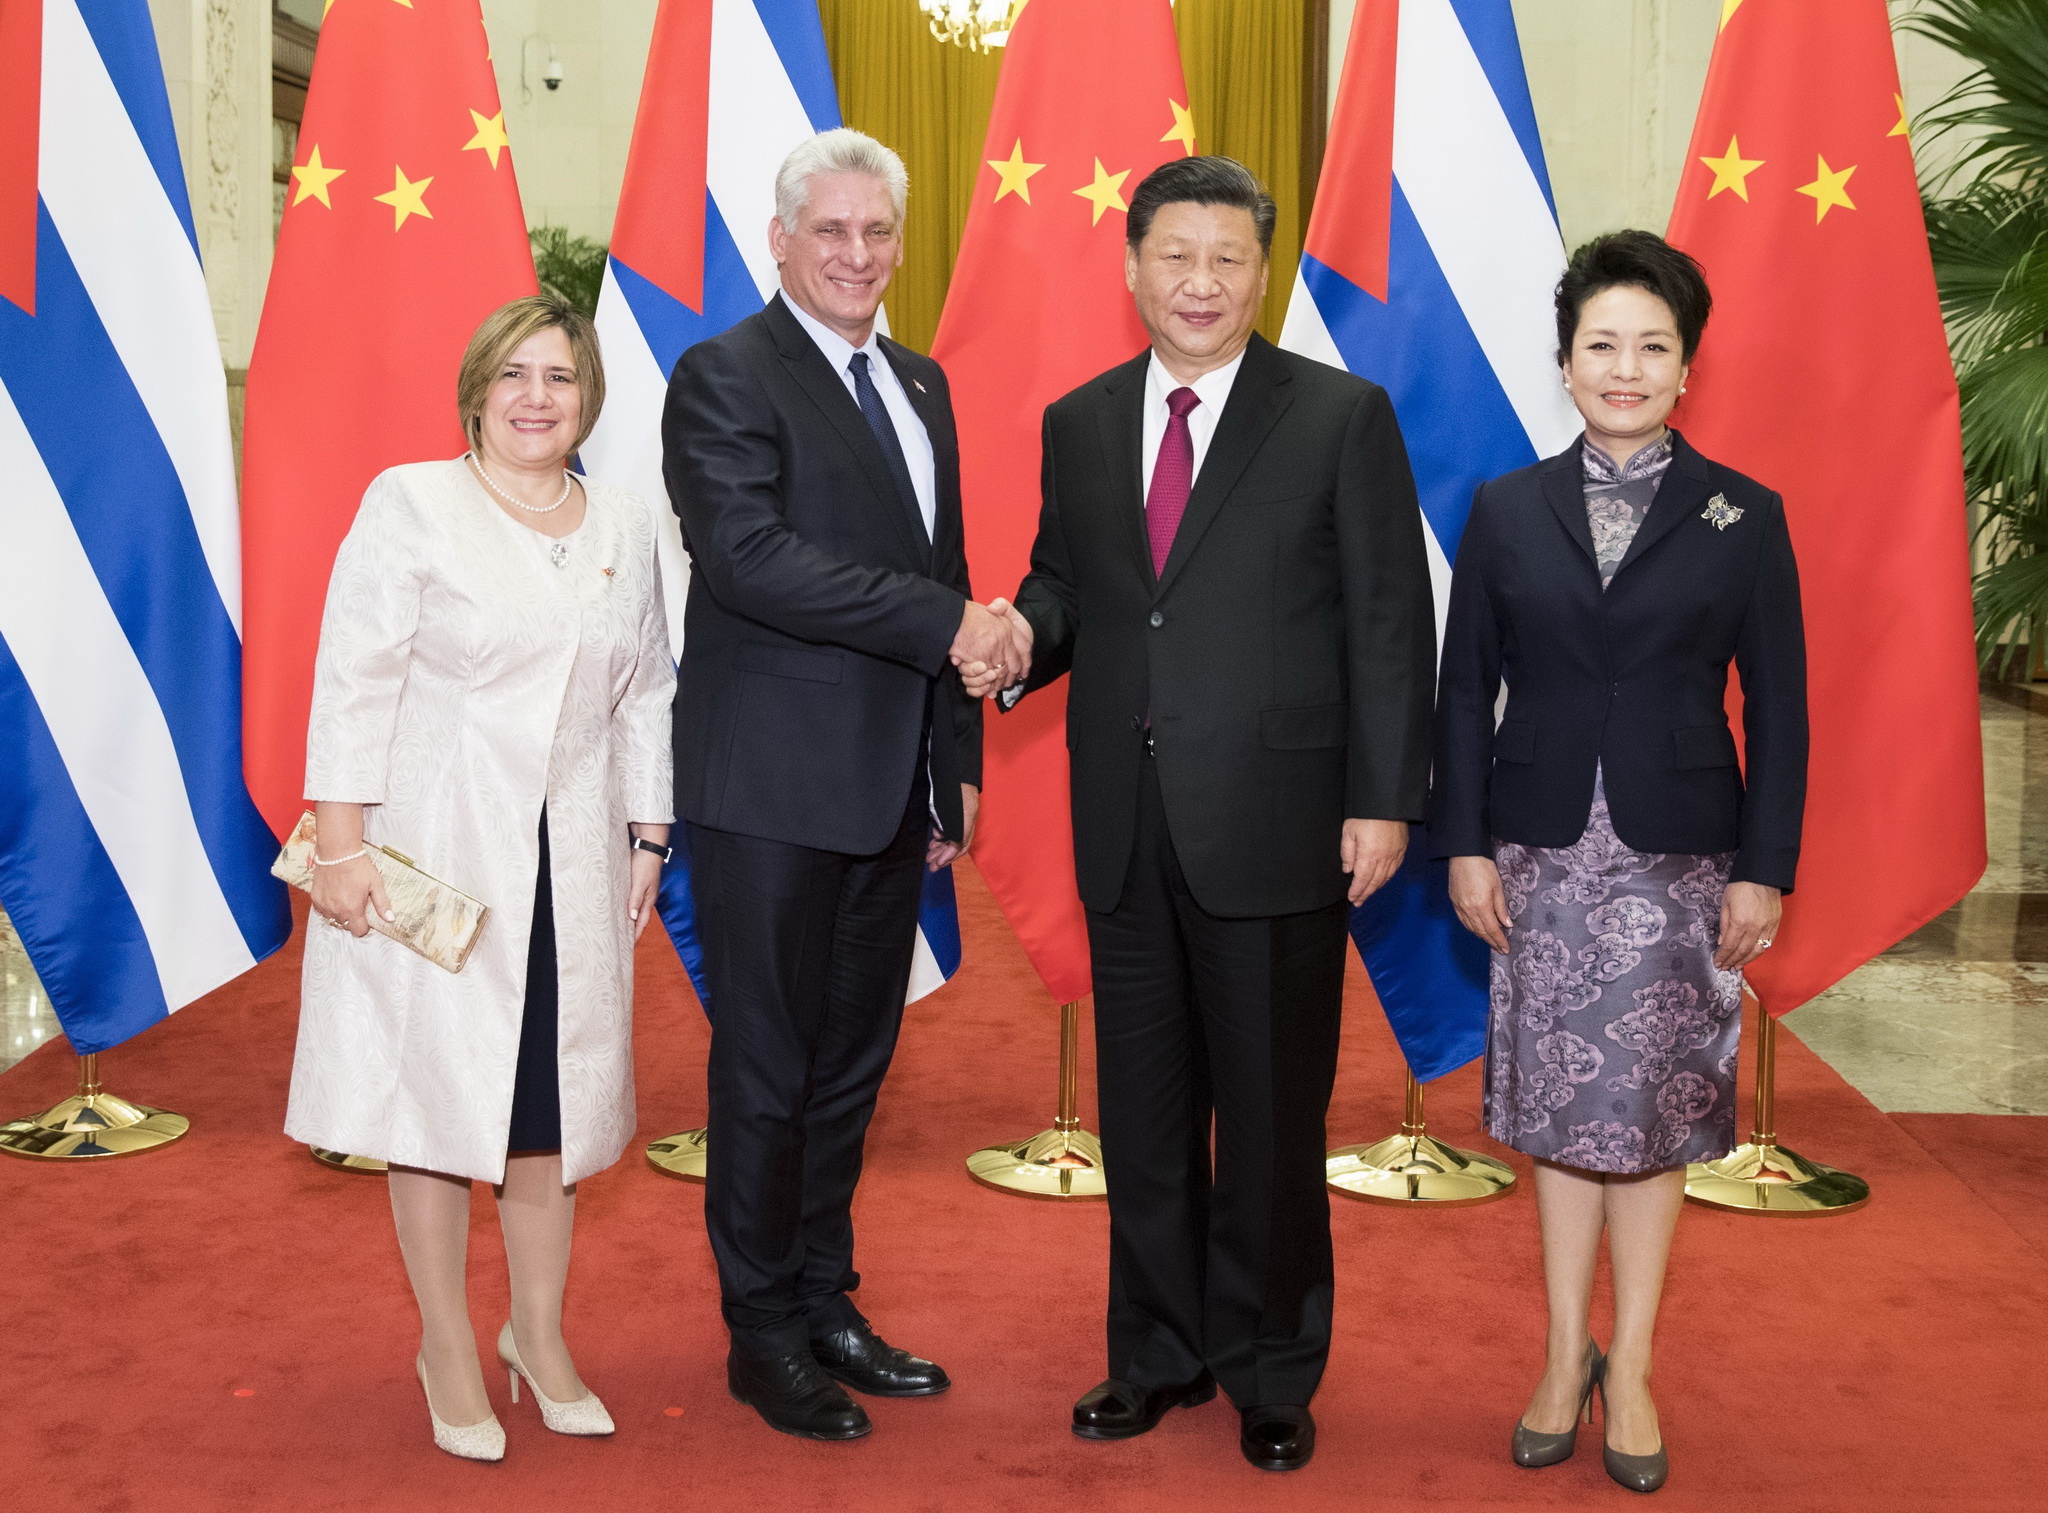 Chủ tịch Trung Quốc Tập Cận Binh (thứ 2, phải) và Chủ tịch Cuba Miguel Diaz-Canel (thứ 2, trái) trong cuộc gặp tại Bắc Kinh ngày 8/11/2018. (Ảnh: THX/TTXVN)